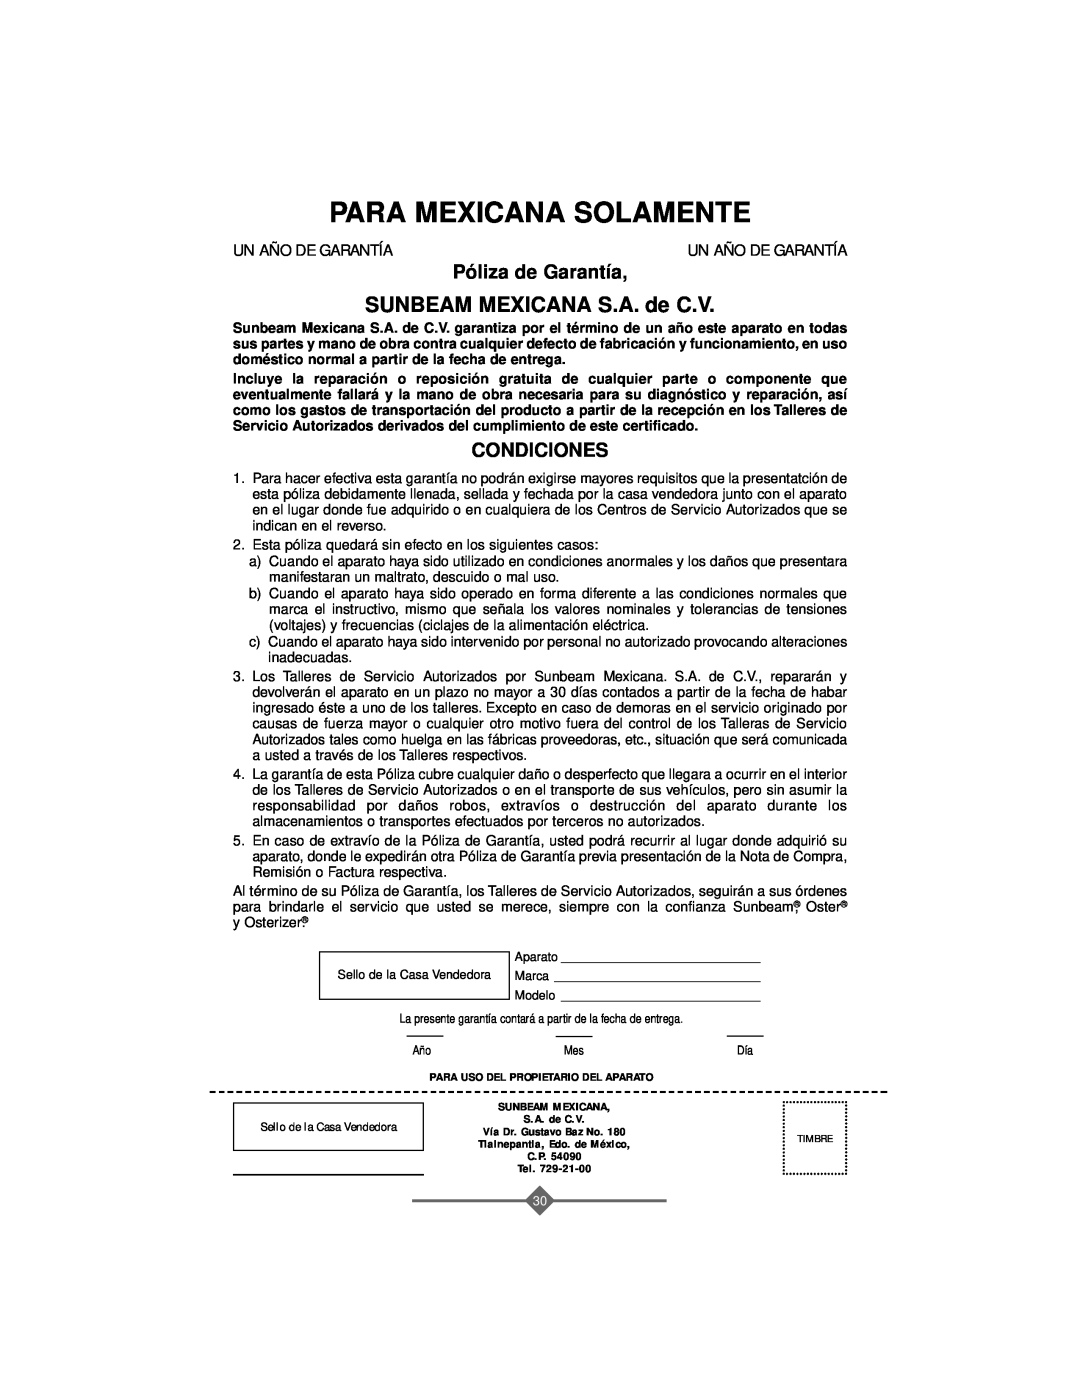 Sunbeam 4743, 4742 instruction manual SUNBEAM MEXICANA S.A. de C.V, Para Mexicana Solamente, Póliza de Garantía, Condiciones 